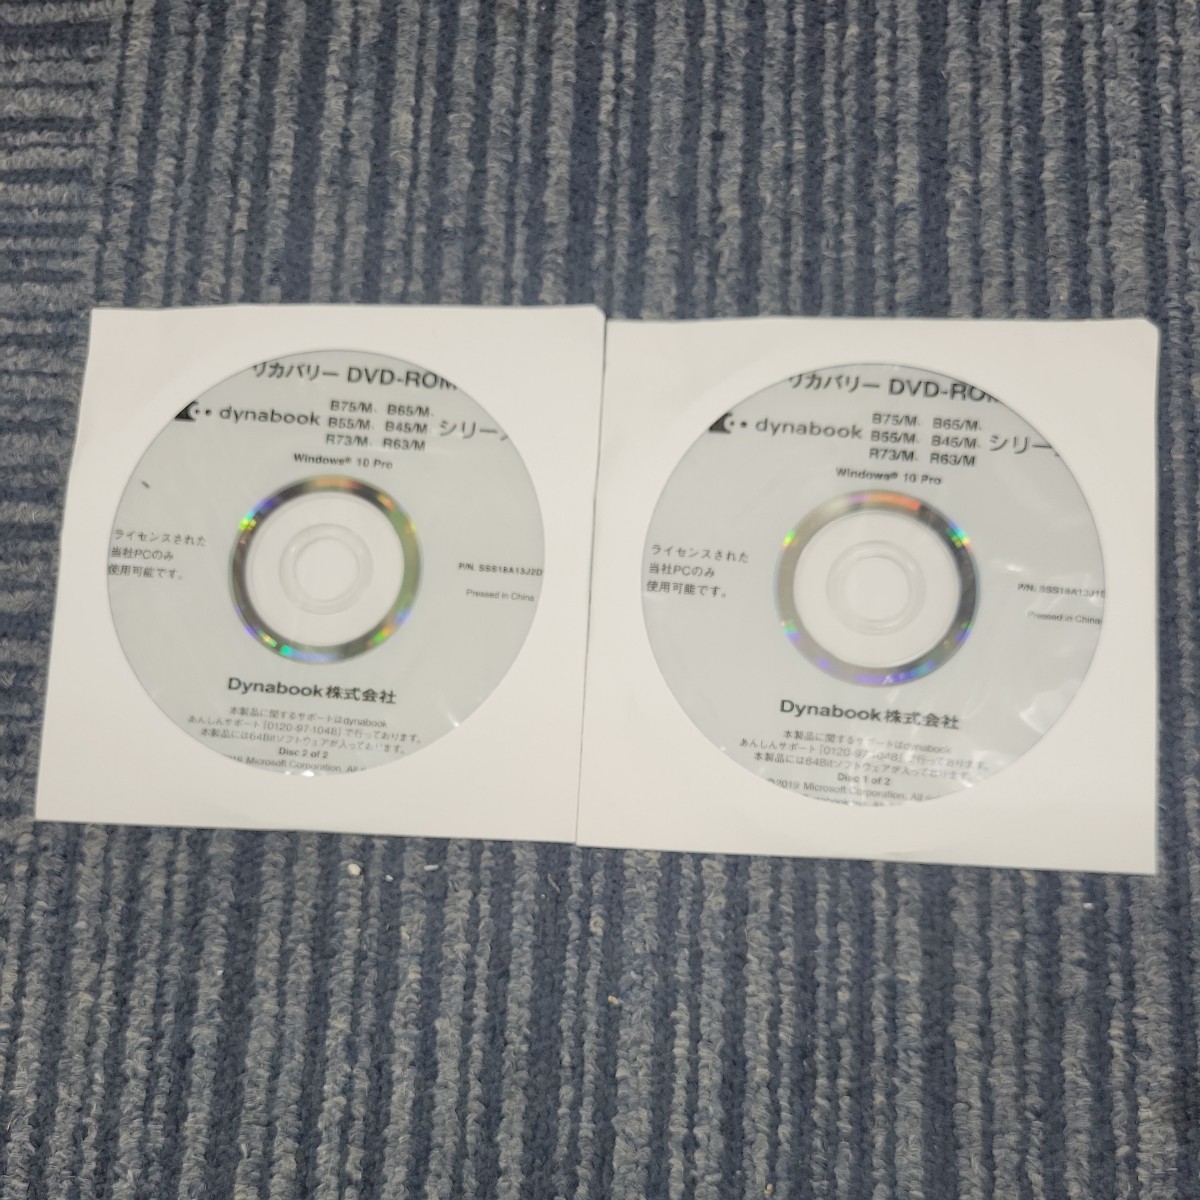 【2枚セット】東芝 TOSHIBA dynabook B75/M B65/M B55/M B45/M R73/M R63/M Win10pro リカバリーディスク DVD-ROM SSS18A13J P02325_画像1